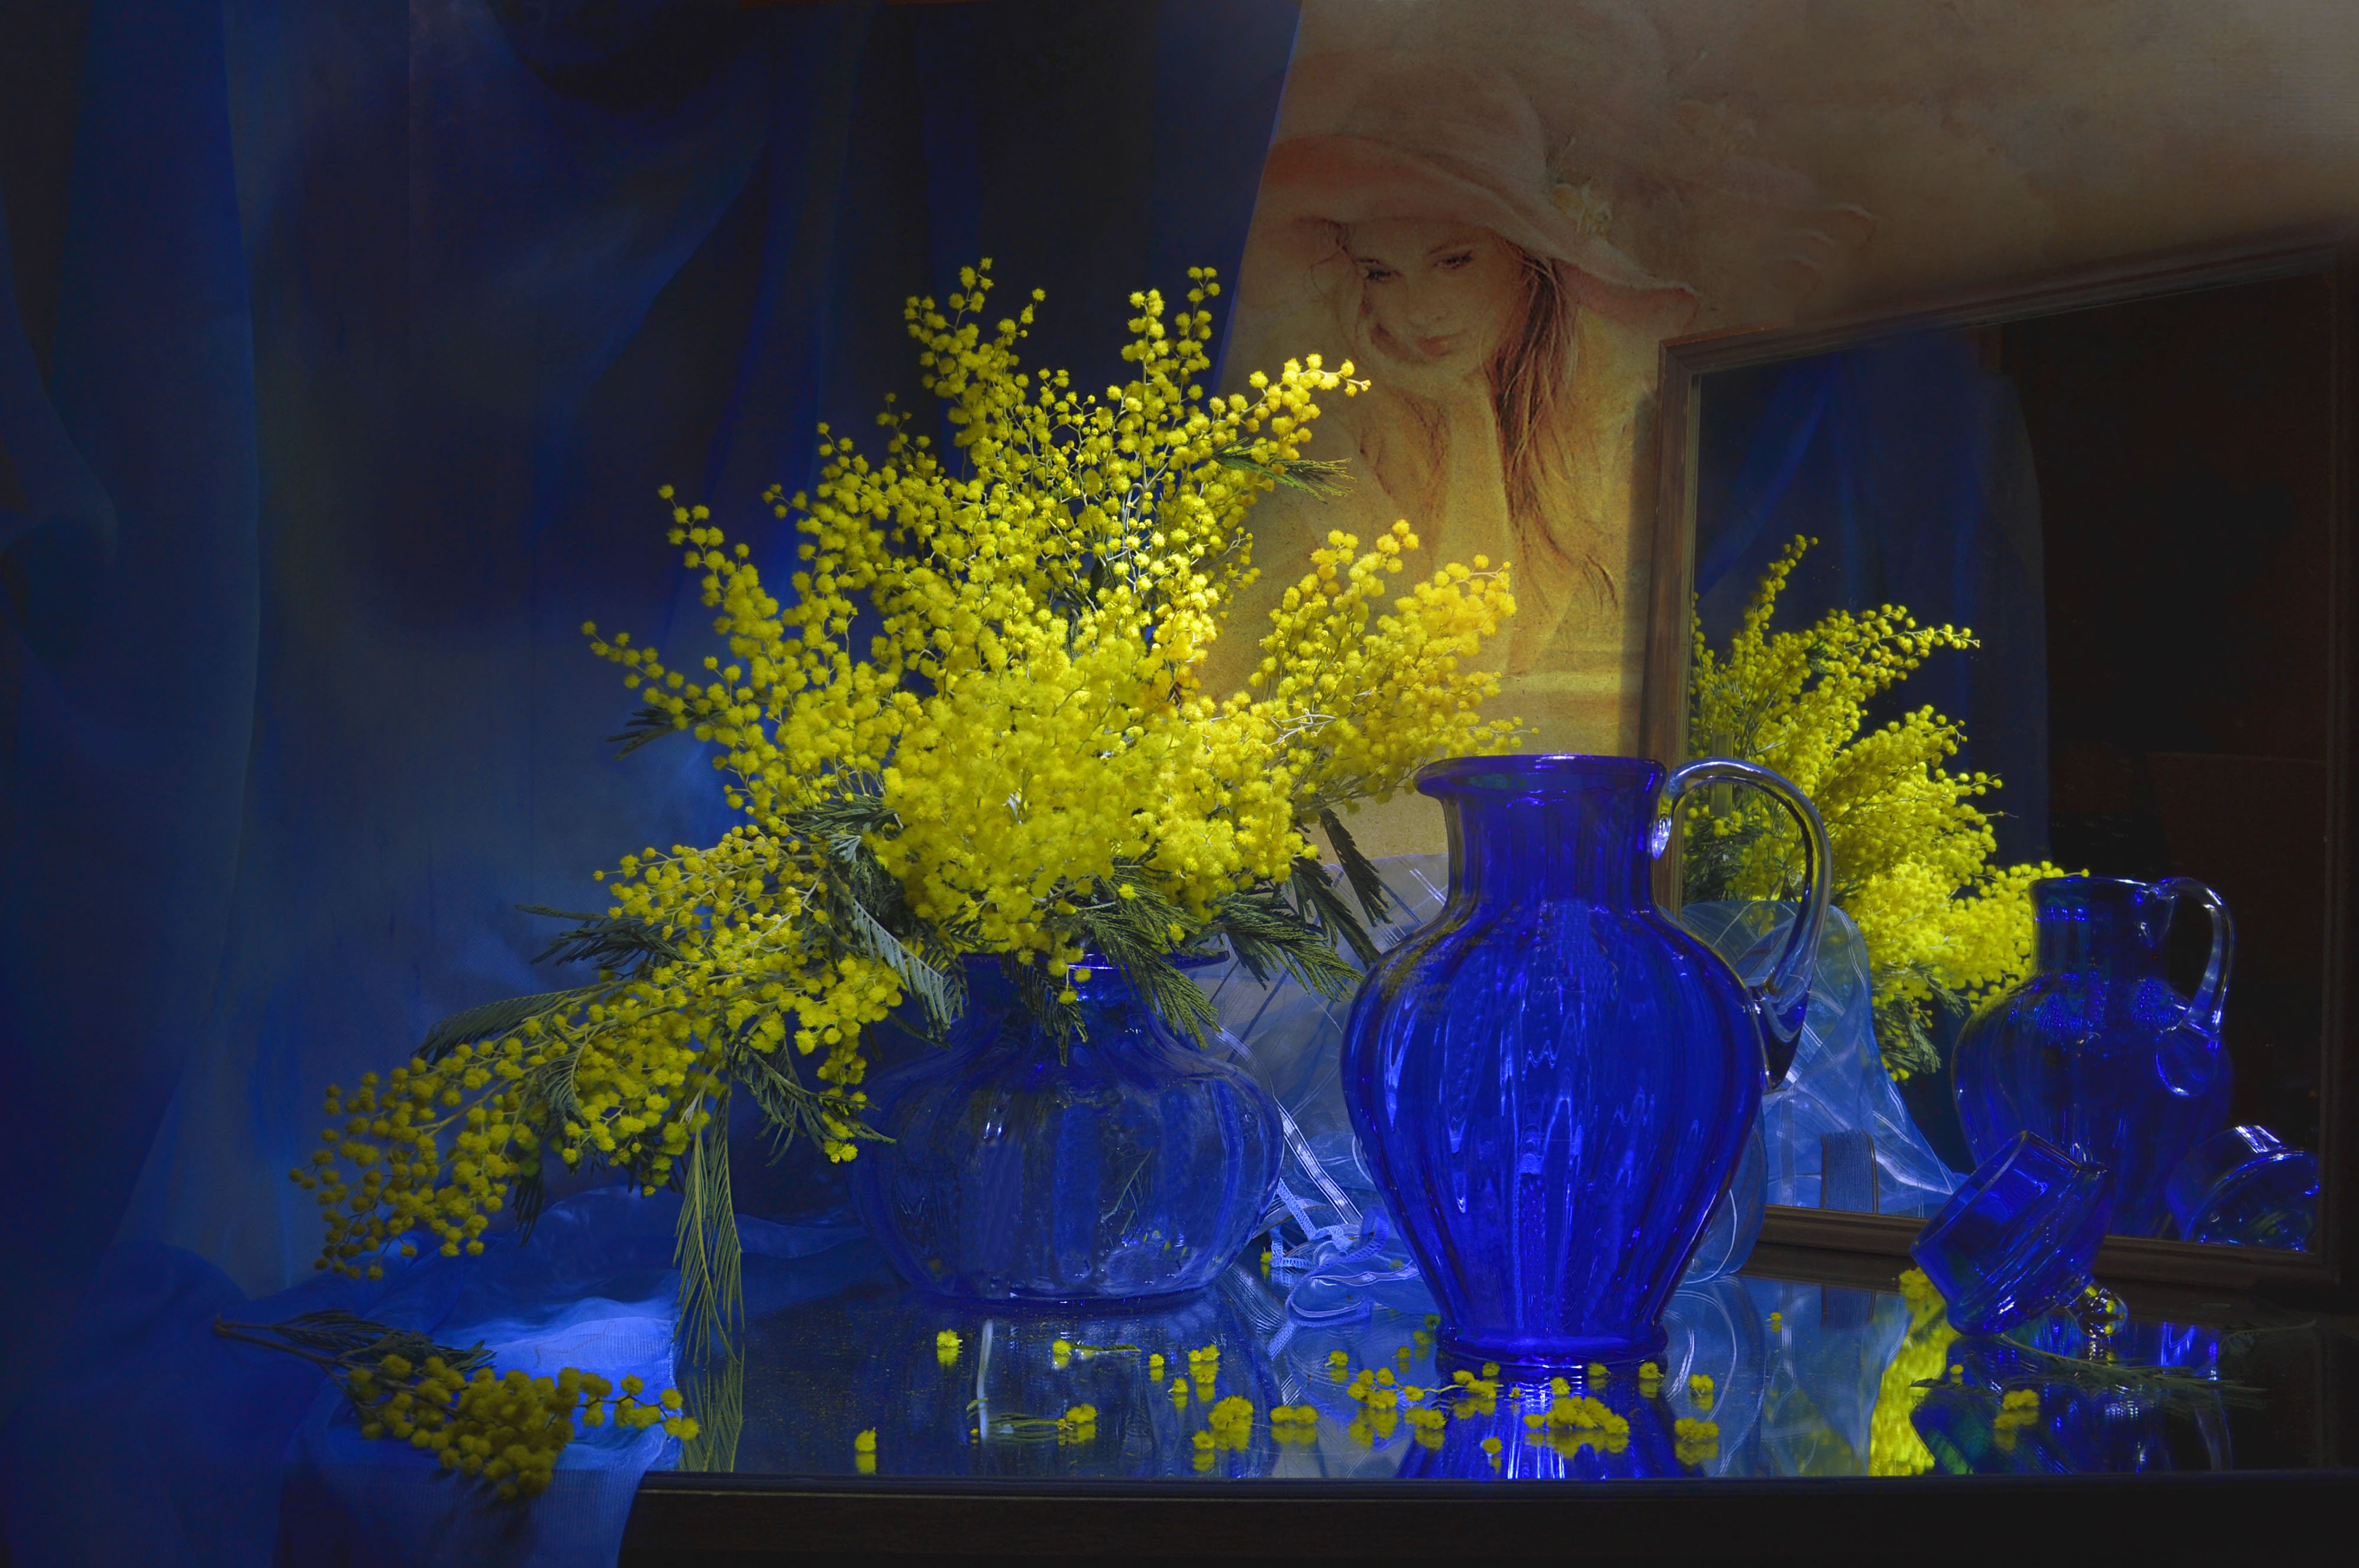 still life,натюрморт, весна, зеркало, кувшин, март, мимоза, отражение, синяя ваза, фото натюрморт, цветы, Колова Валентина